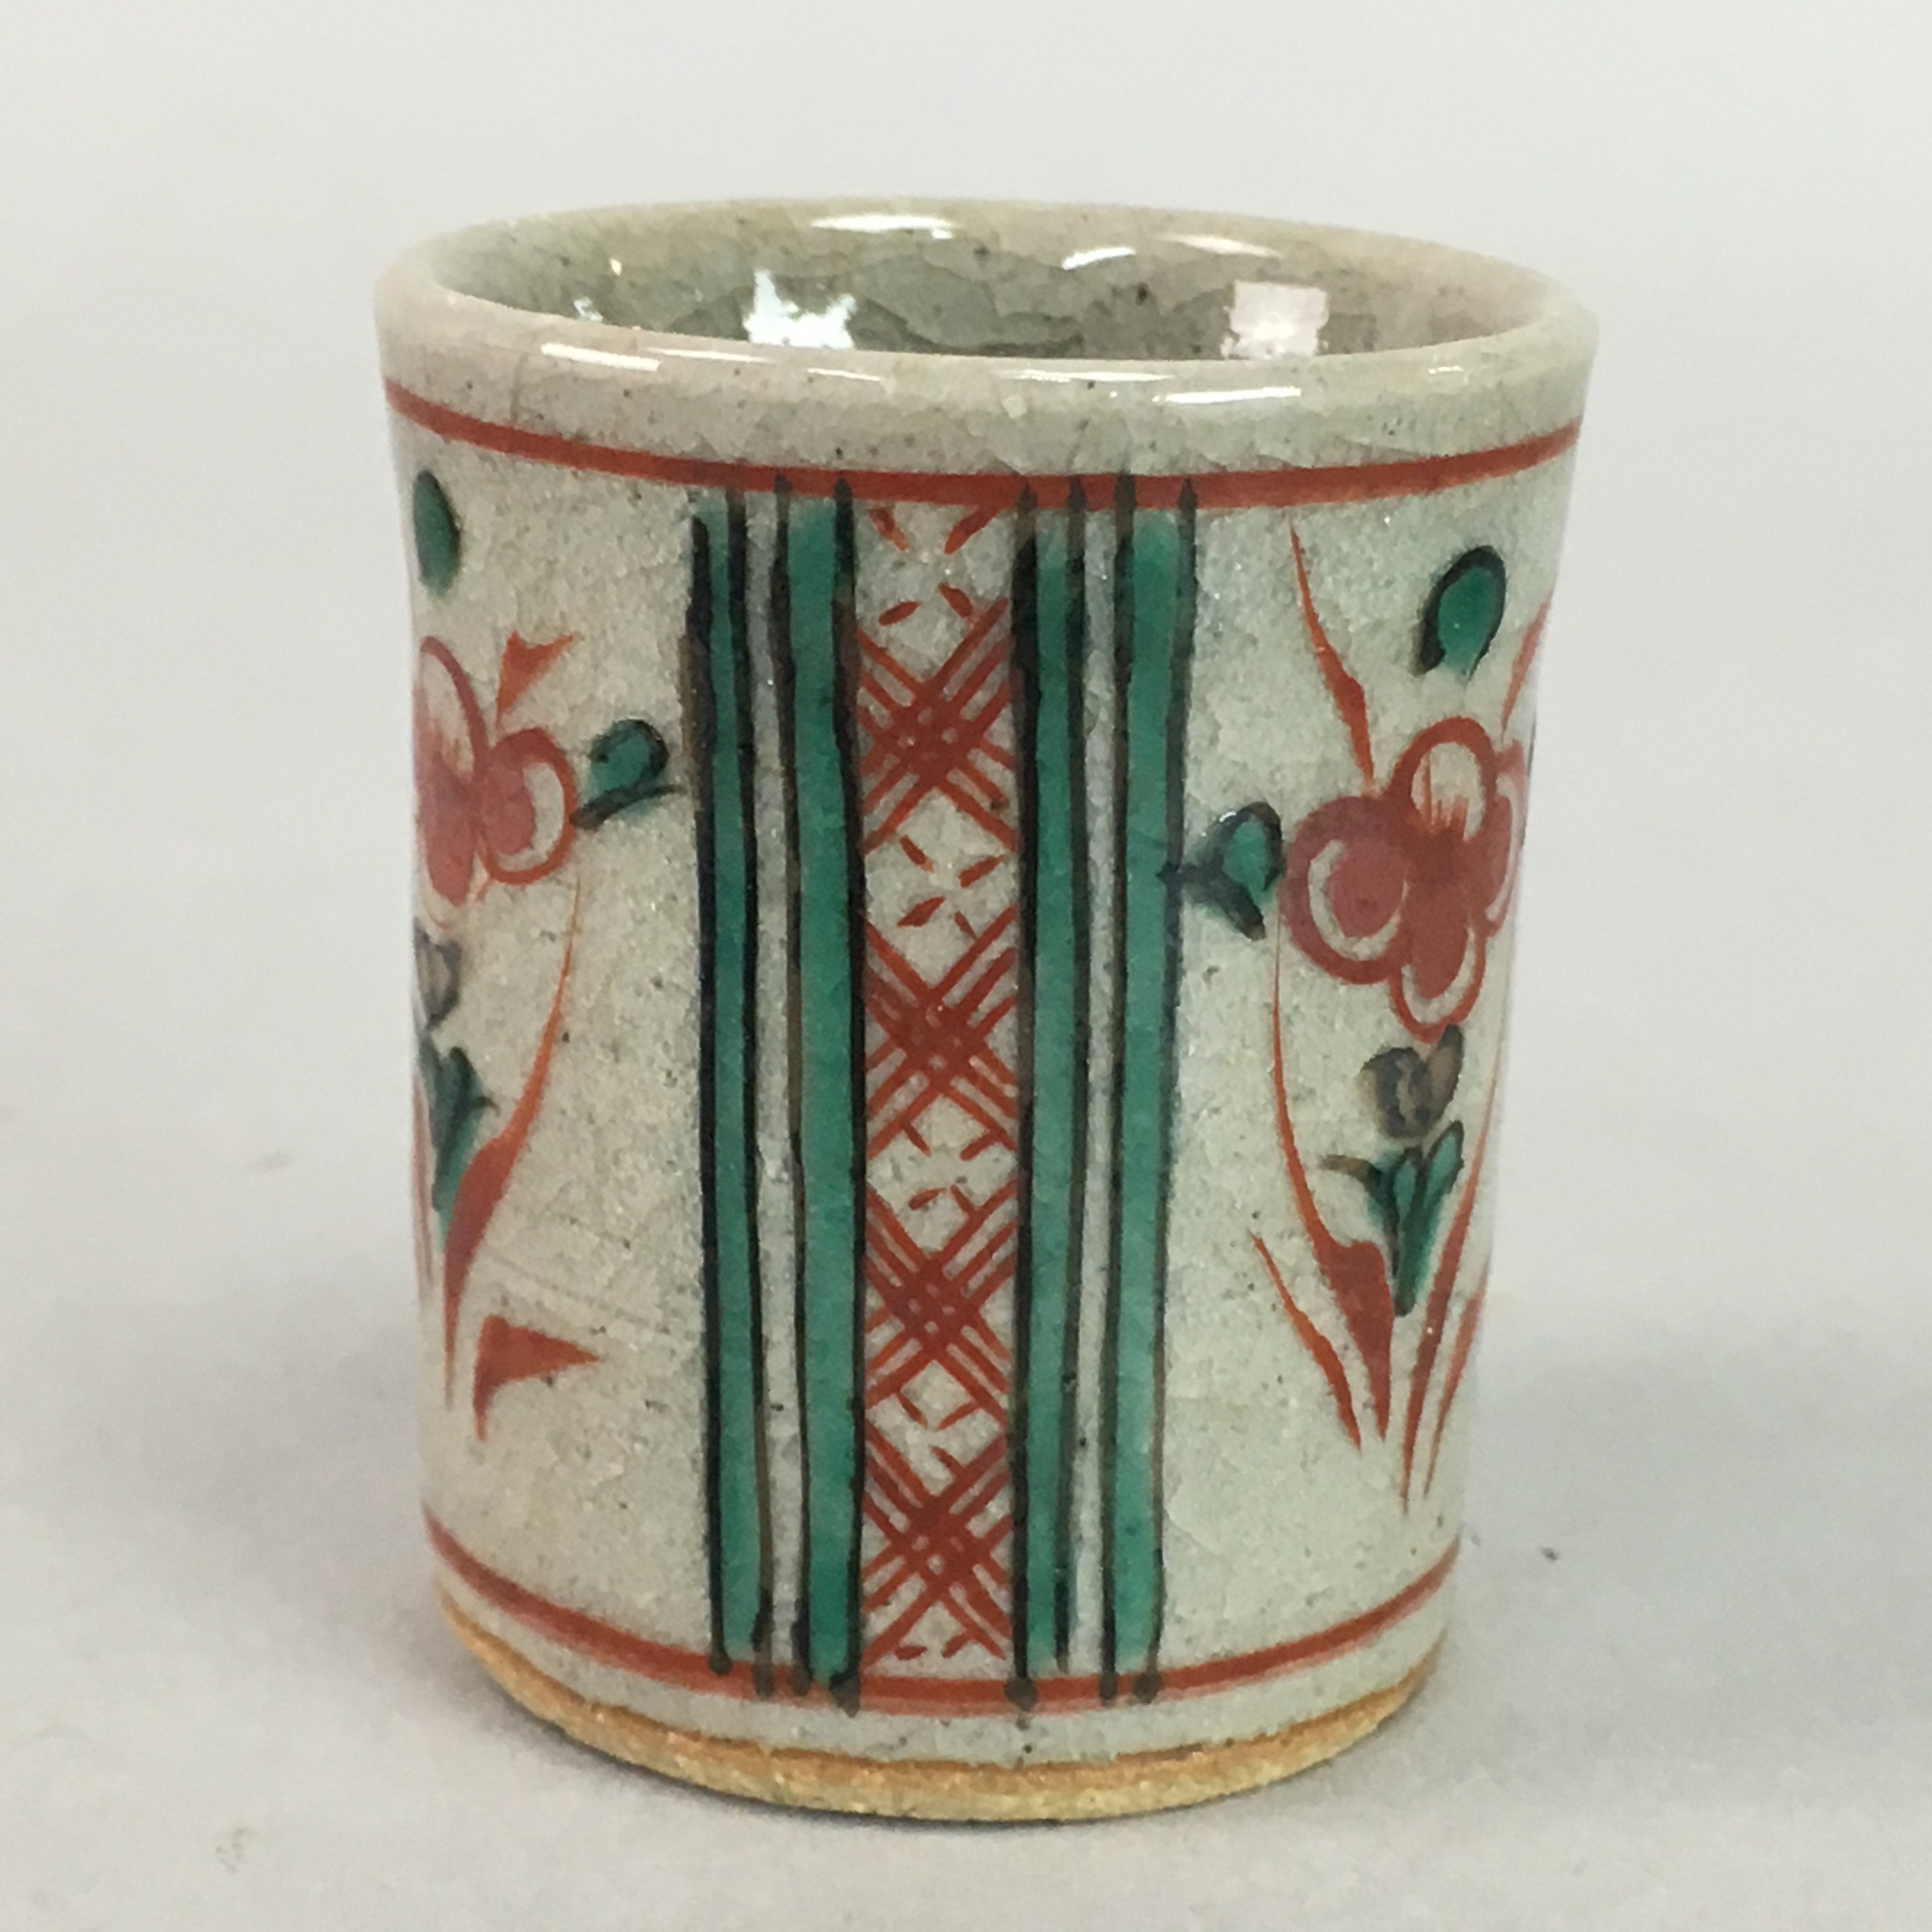 Japanese Ceramic Sake Cup Guinomi Sakazuki Vtg Floral Pottery Red Green GU540